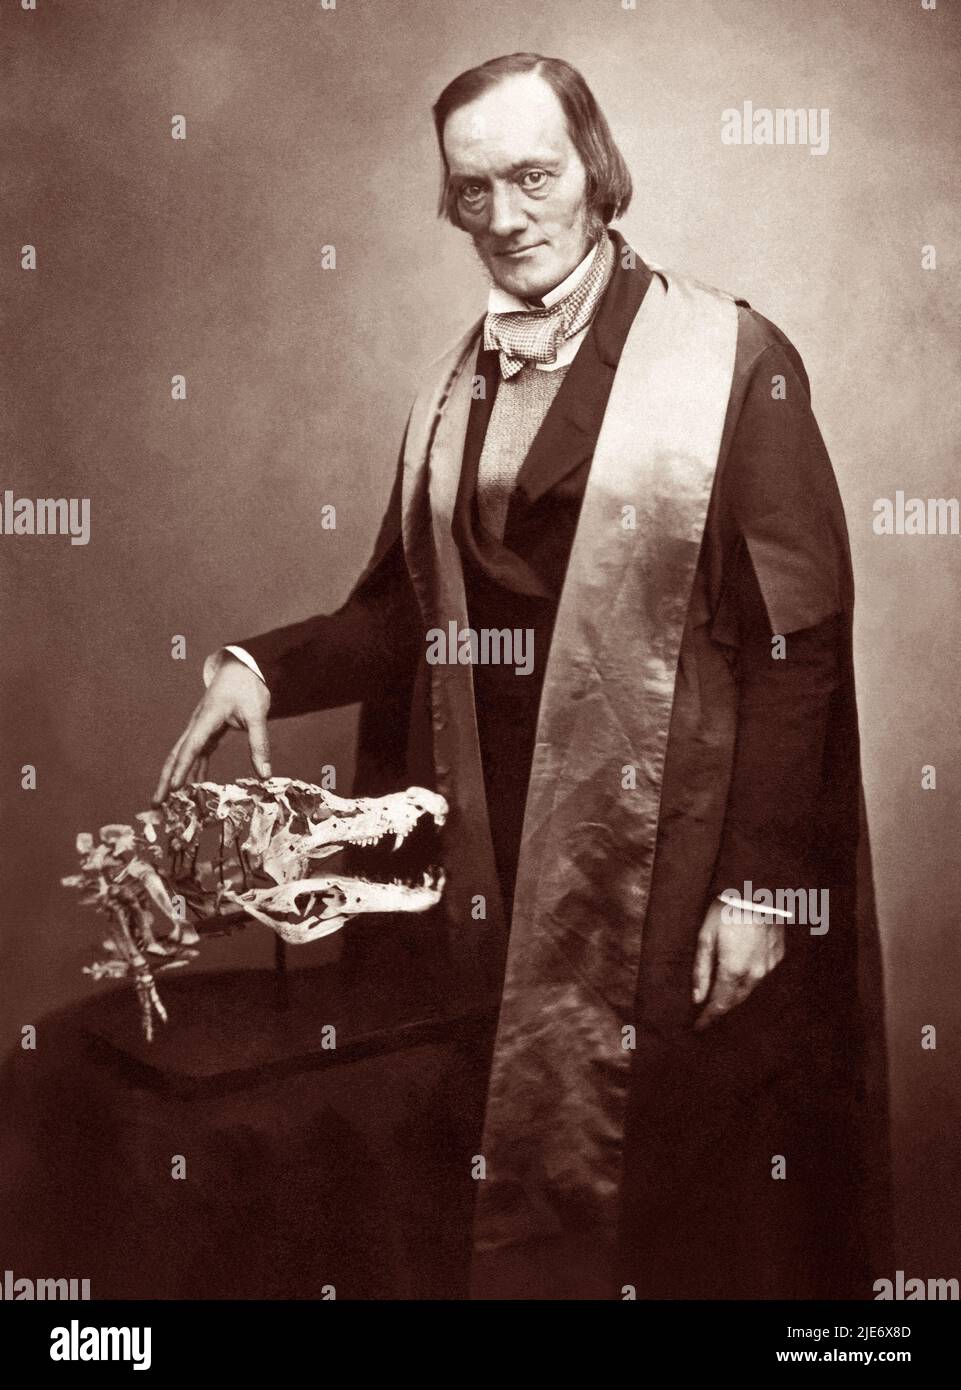 Sir Richard Owen KCB FRS (1804-1892) biologo inglese, anatomista comparativo e paleontologo che coniò il termine dinosauria, da cui deriva la parola dinosauro. Owen era un critico parlato della teoria dell'evoluzione di Charles Darwin per selezione naturale. Foto: 1856. Foto Stock